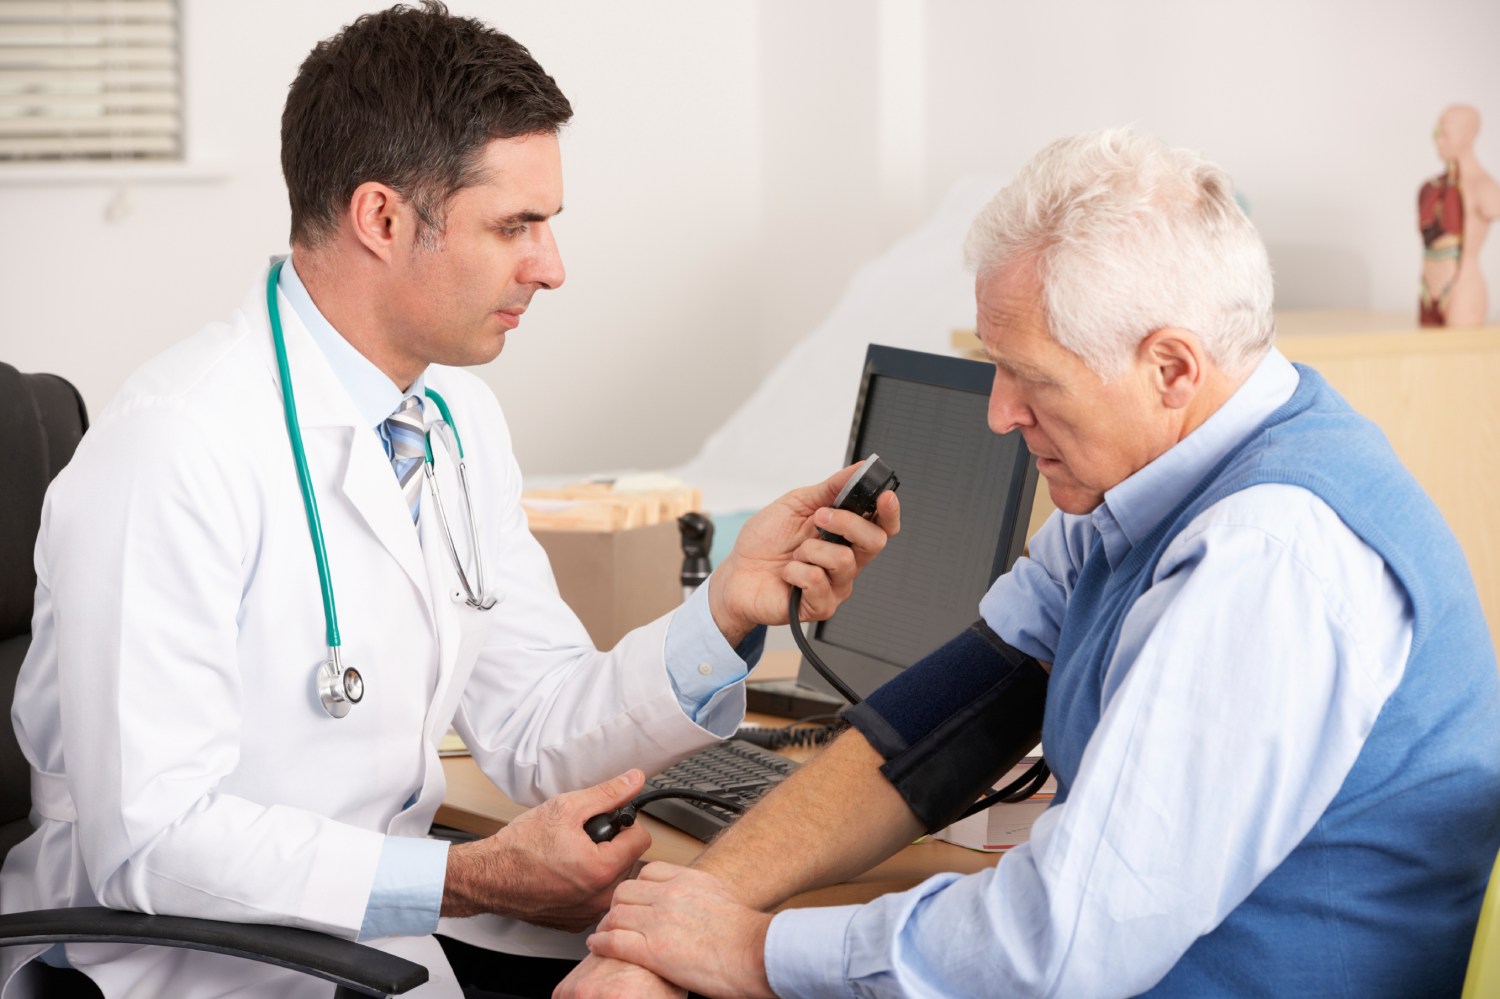 An elderly man gets his blood pressure taken